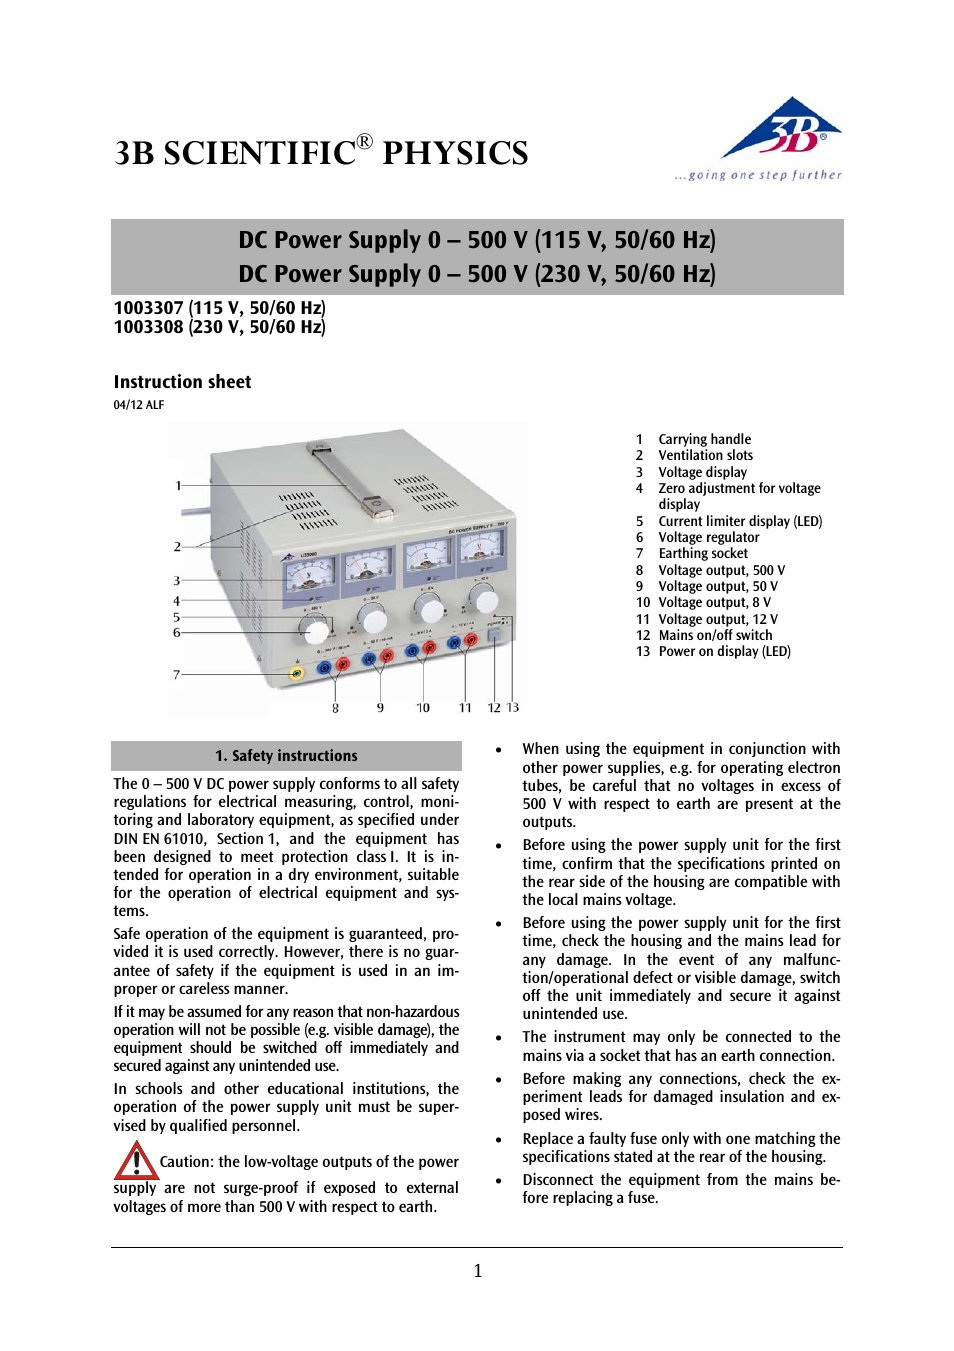 DC Power Supply 0-500 V (230 V, 50__60 Hz)